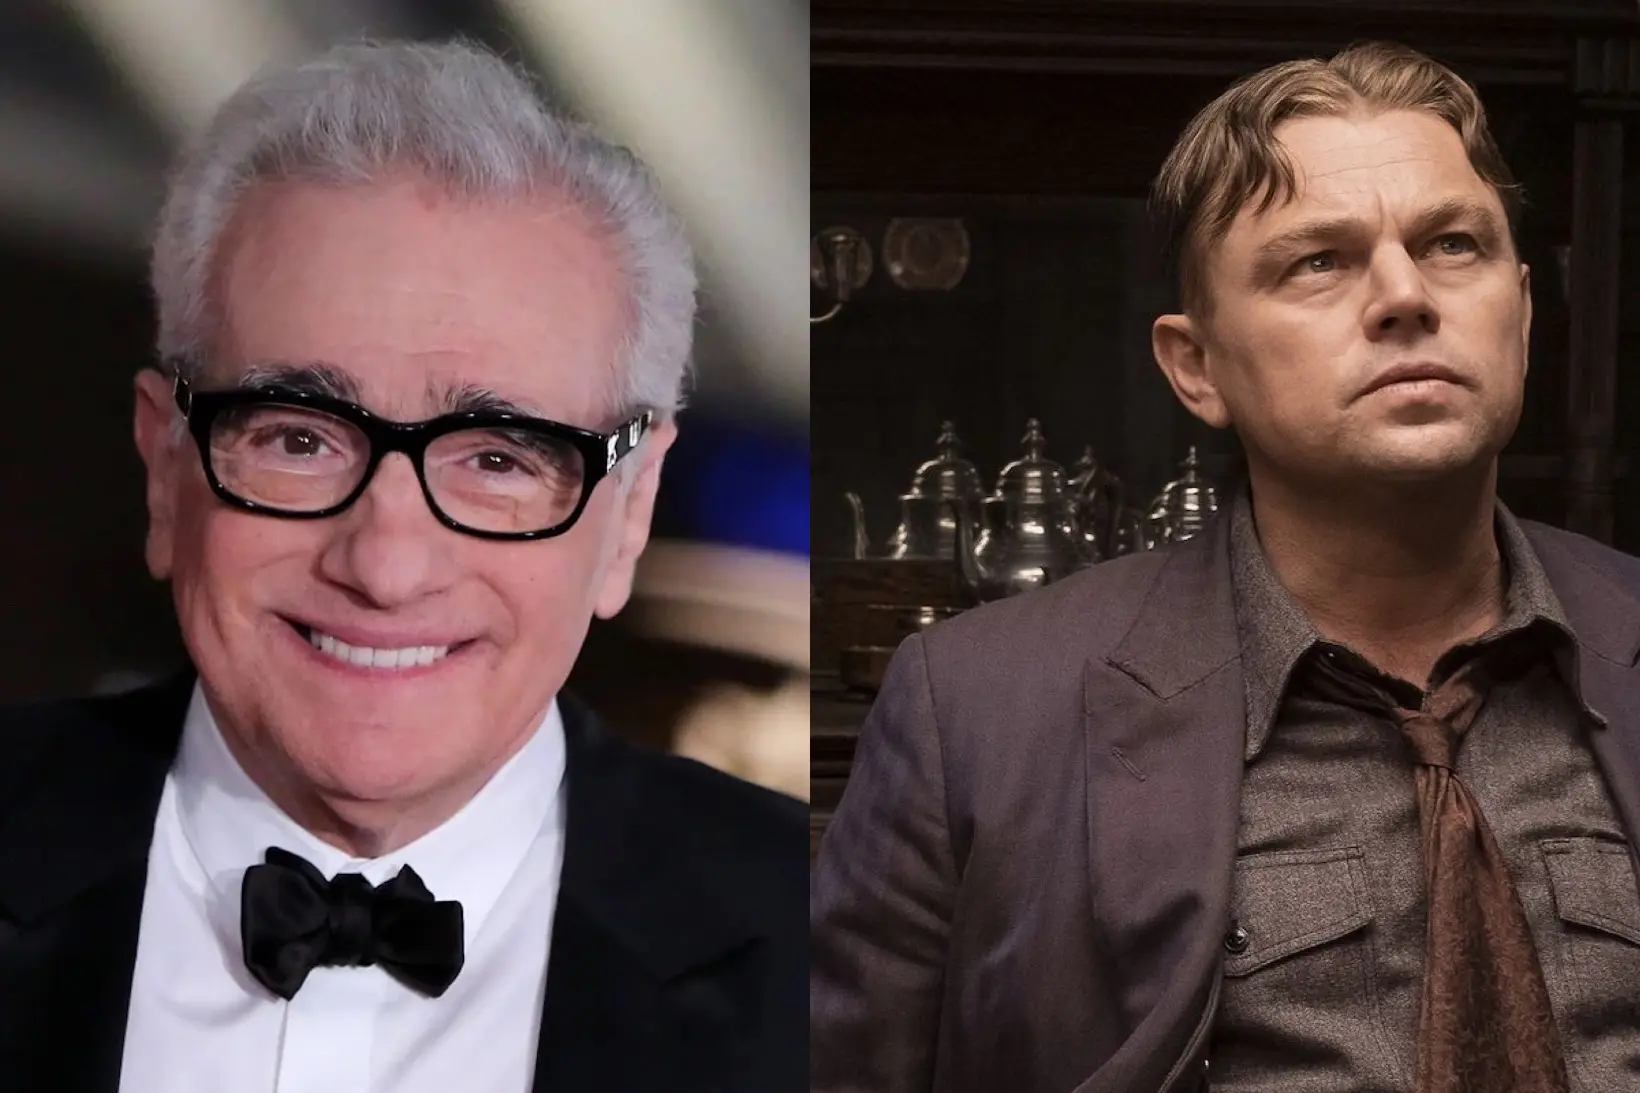 Les Naufragés du Wager : Martin Scorsese et Leonardo DiCaprio vont de nouveau collaborer ensemble pour un film de pirates